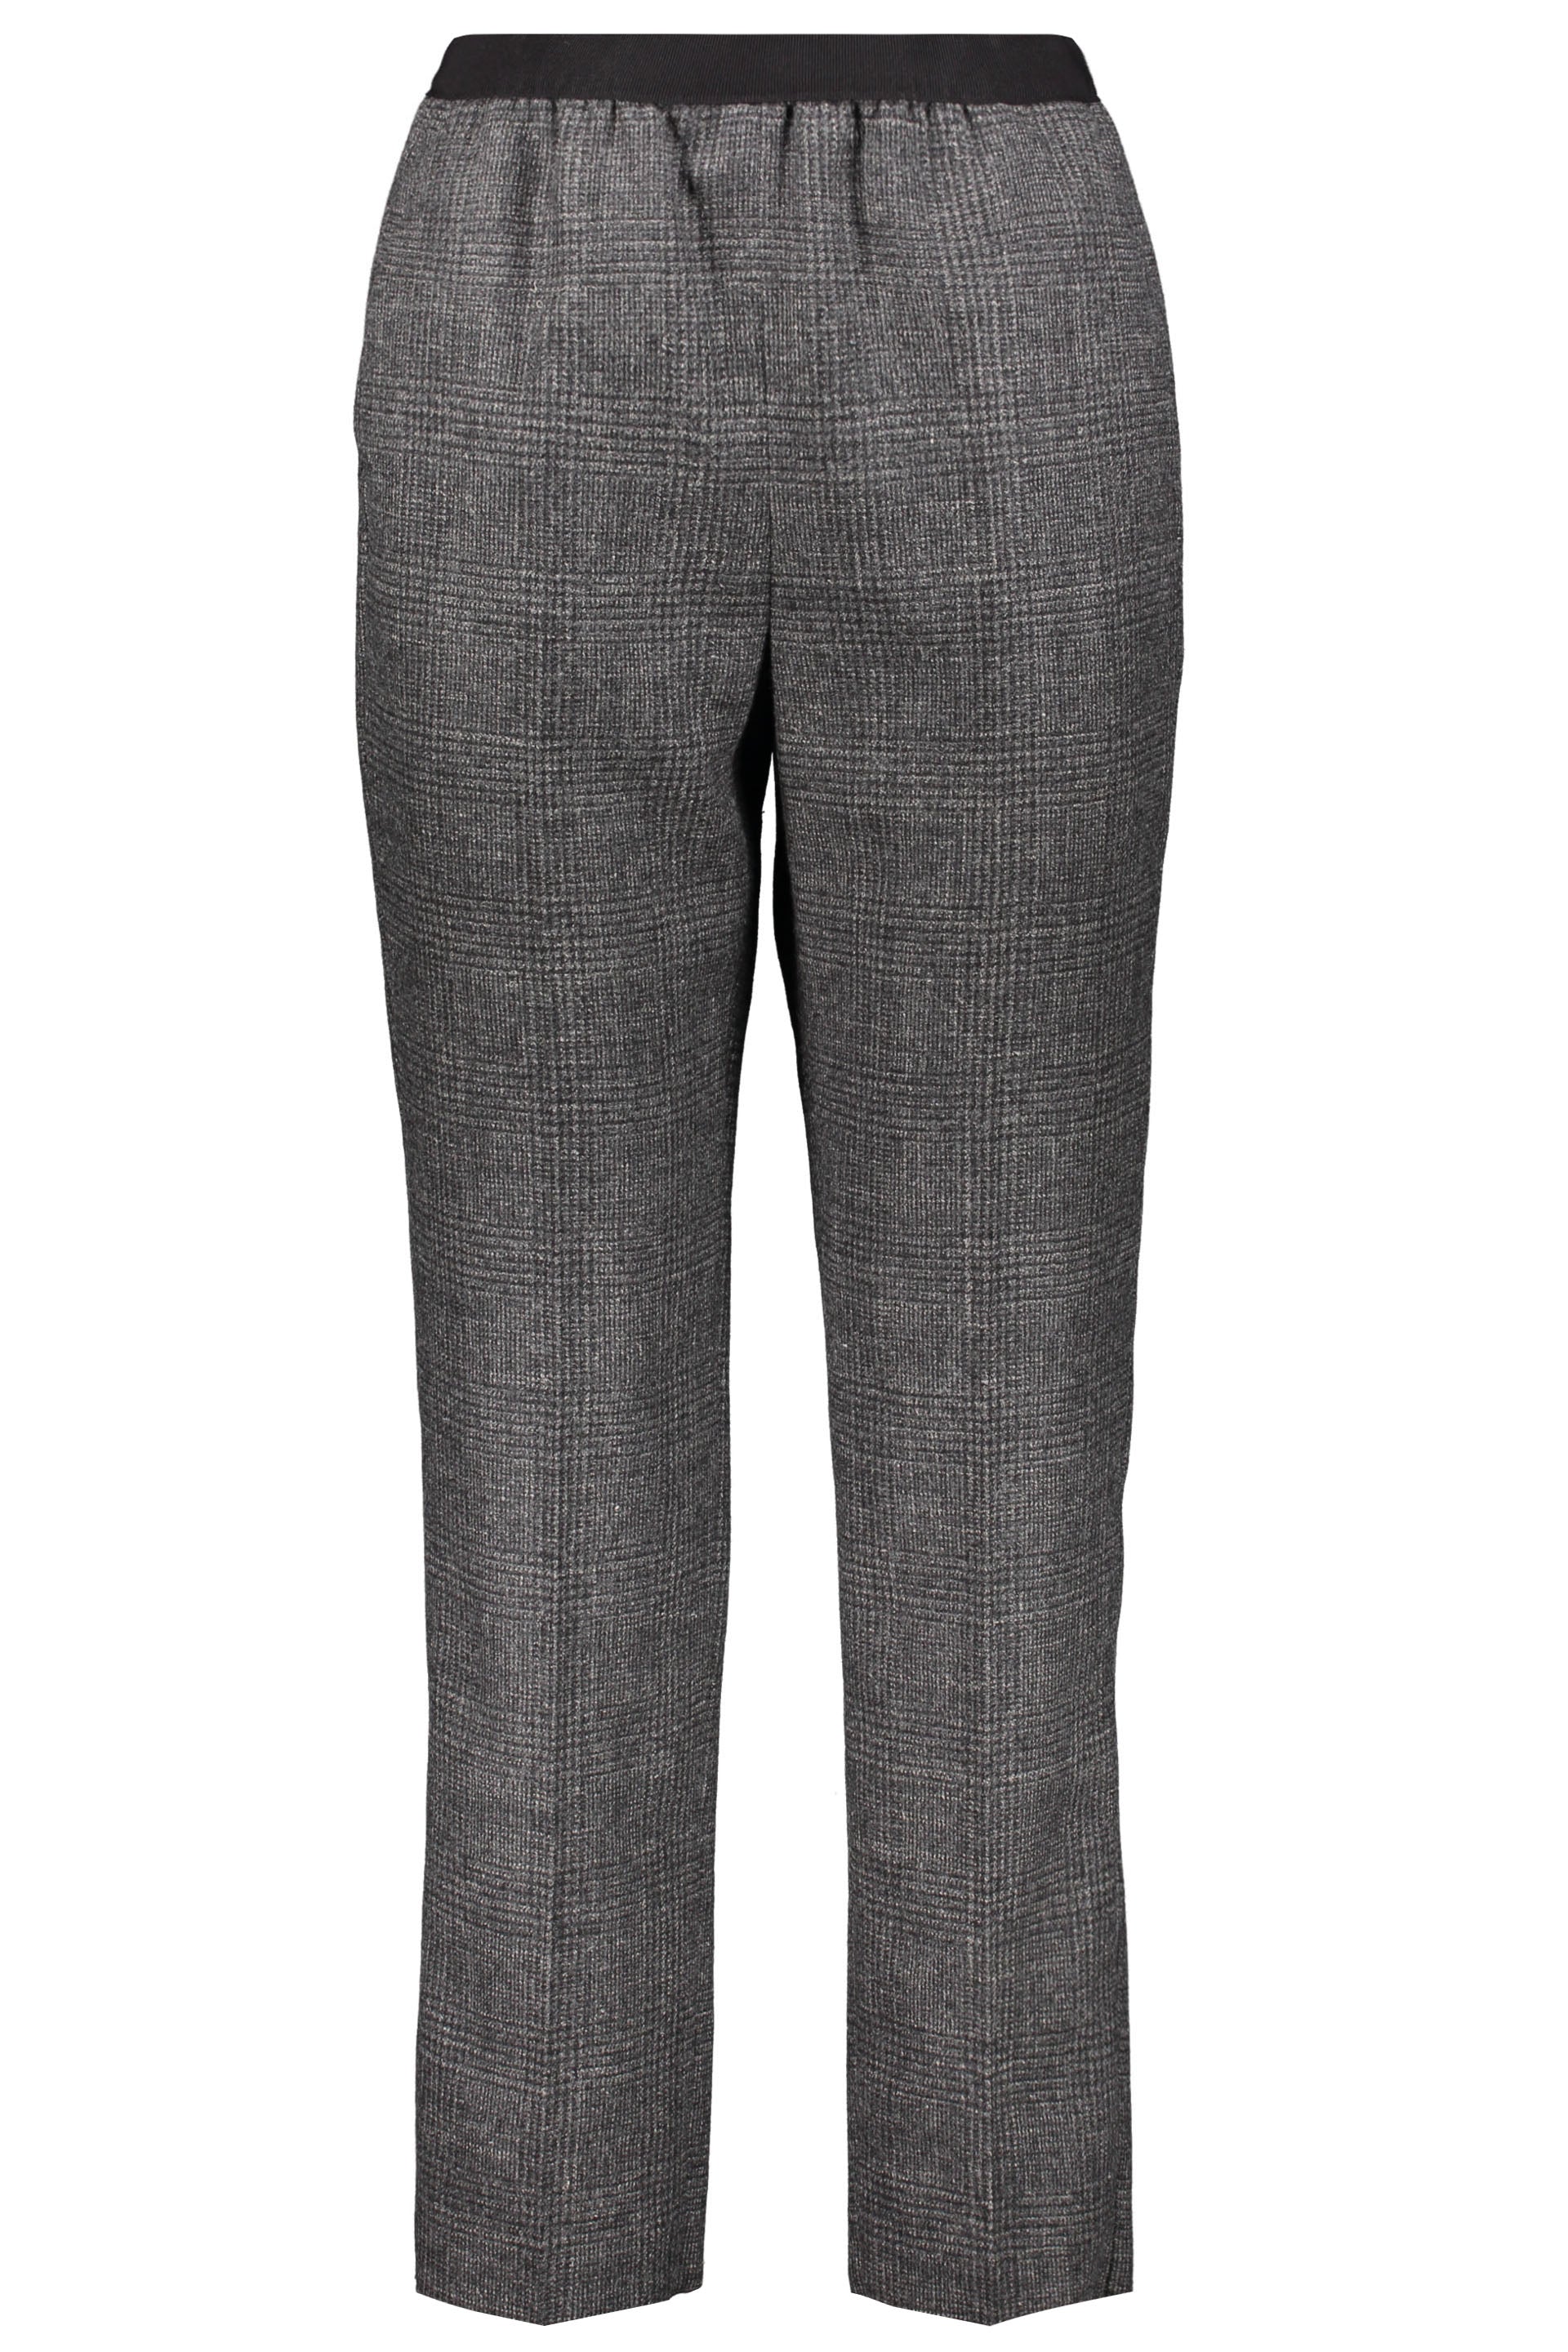 Agnona-OUTLET-SALE-Long-trousers-Hosen-38-ARCHIVE-COLLECTION.jpg